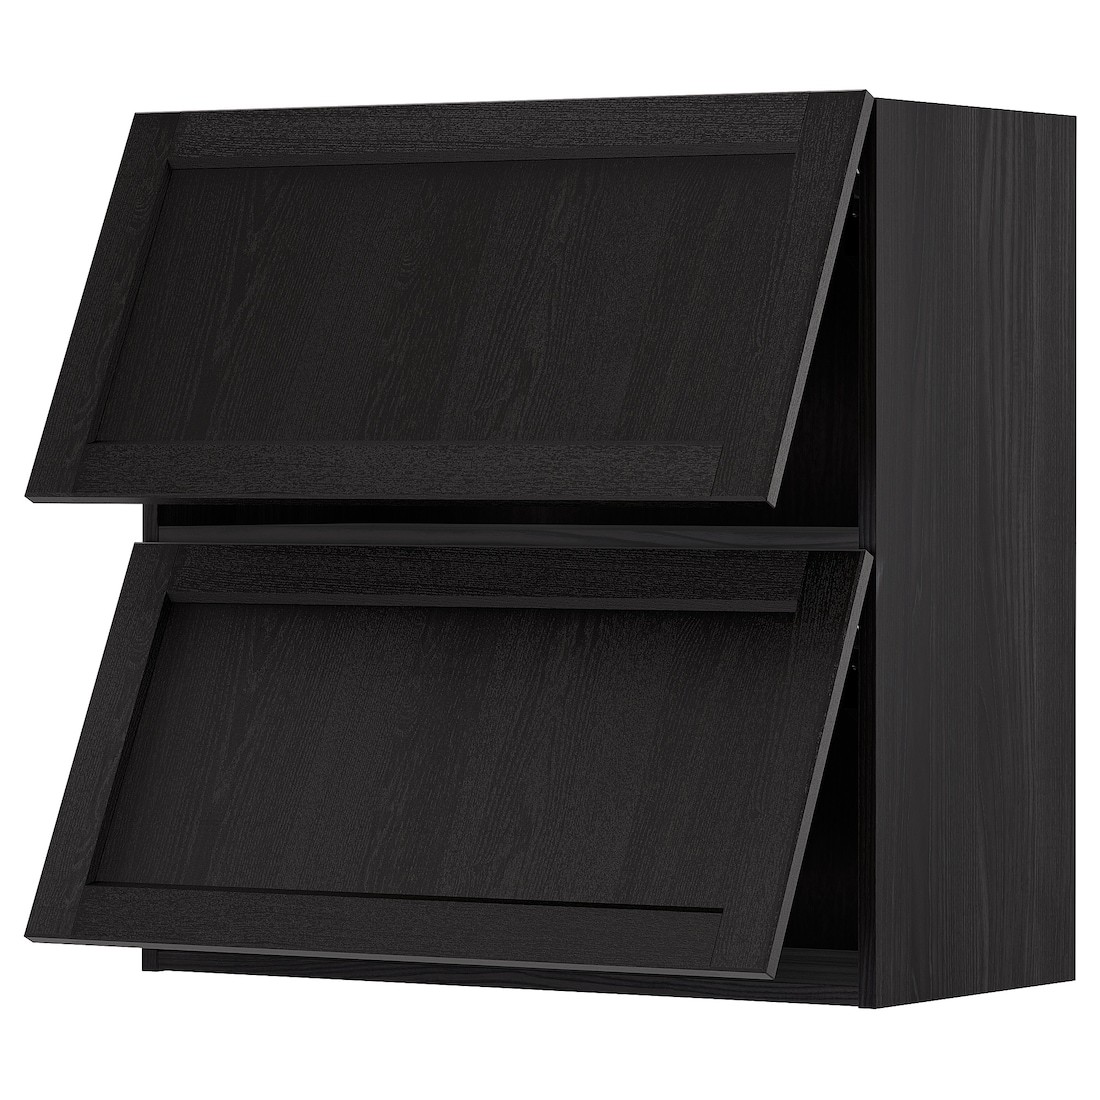 METOD МЕТОД Навесной горизонтальный шкаф / 2 двери, черный / Lerhyttan черная морилка, 80x80 см